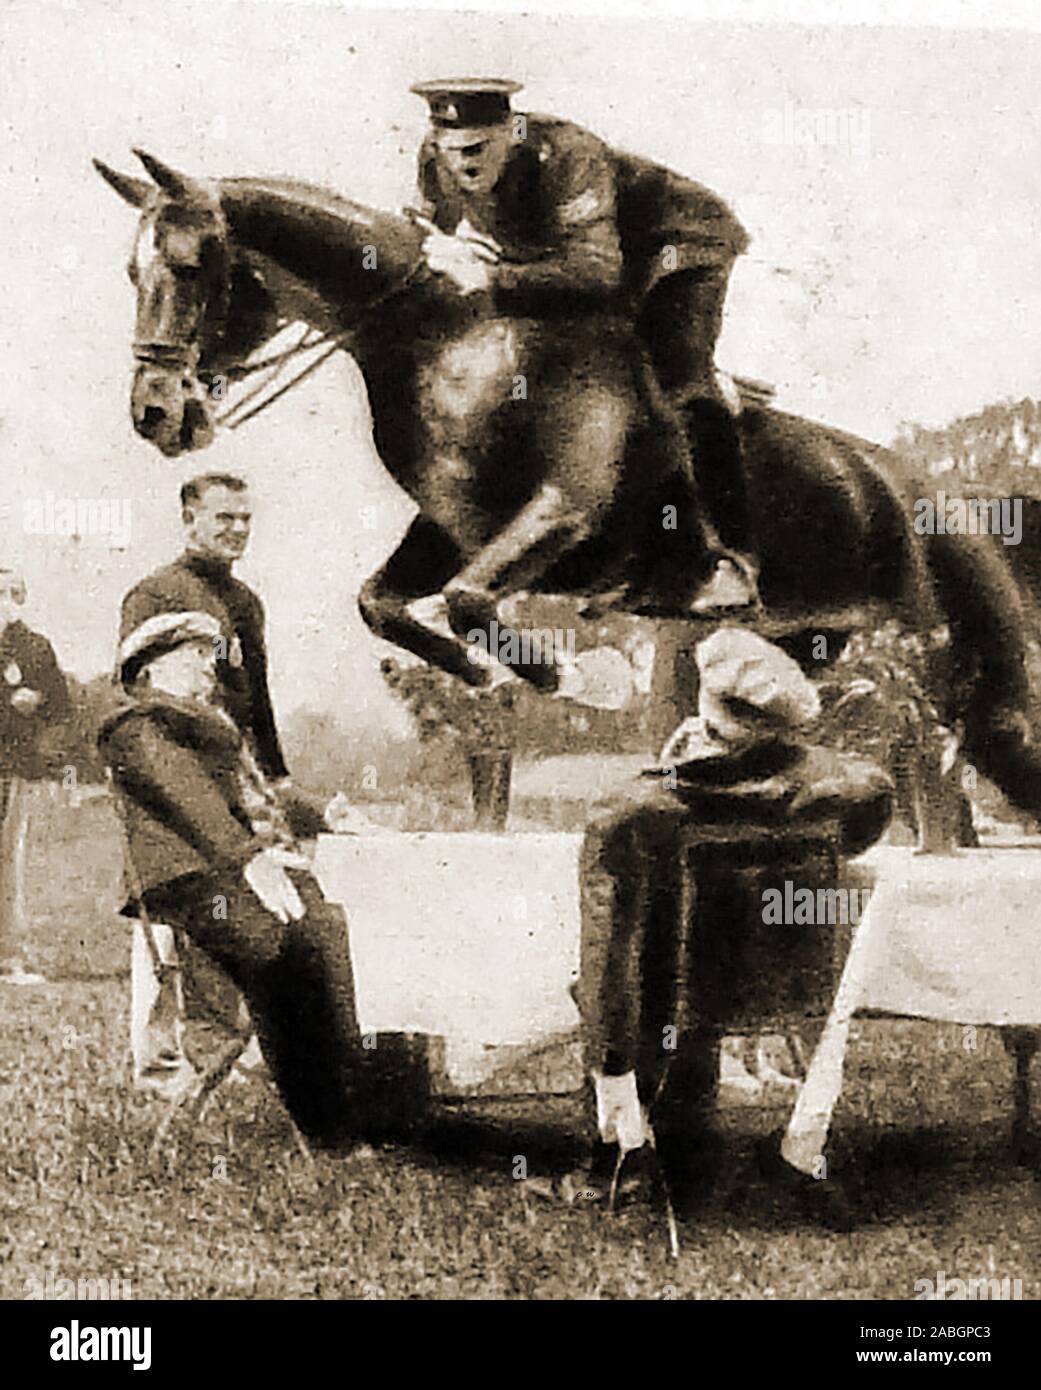 1948 vintage fotografia - un britannico montato poliziotto che mostra il suo cavallo competenze al Metropolitan Police Horse Show a Imber Court. Thames Ditton Foto Stock